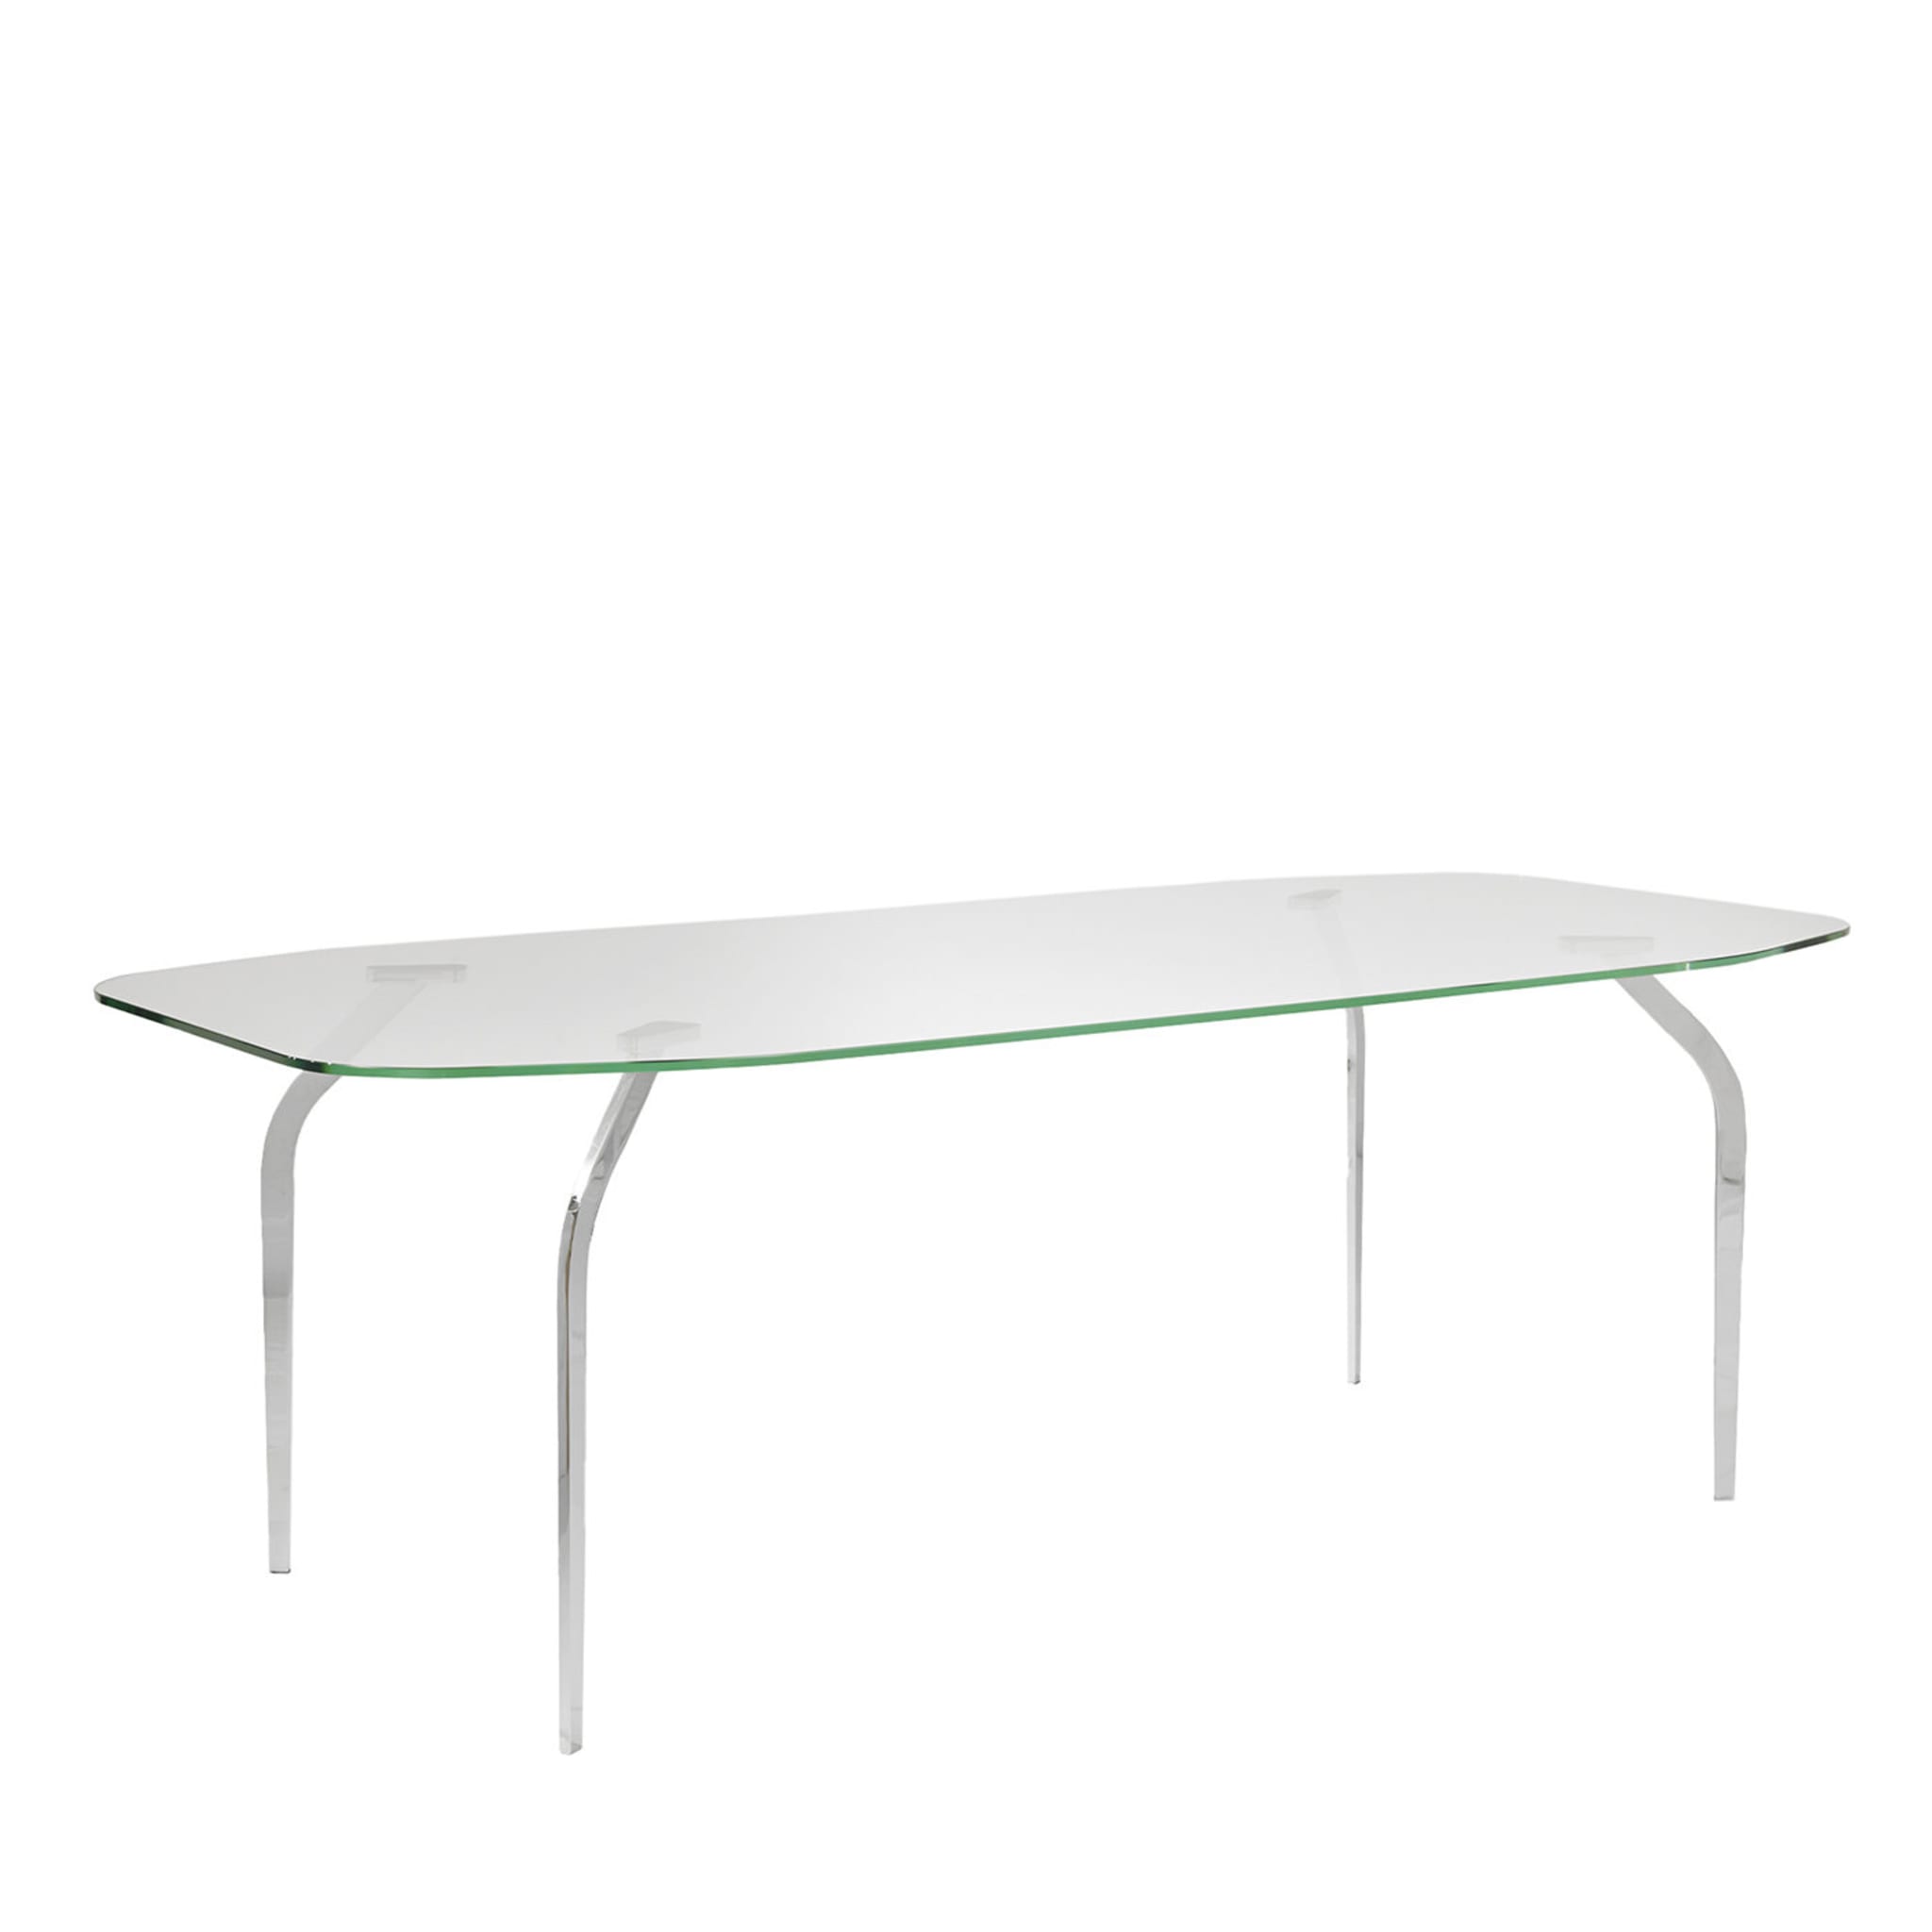 Mira XL Transparent Table by Mac Stopà - Main view